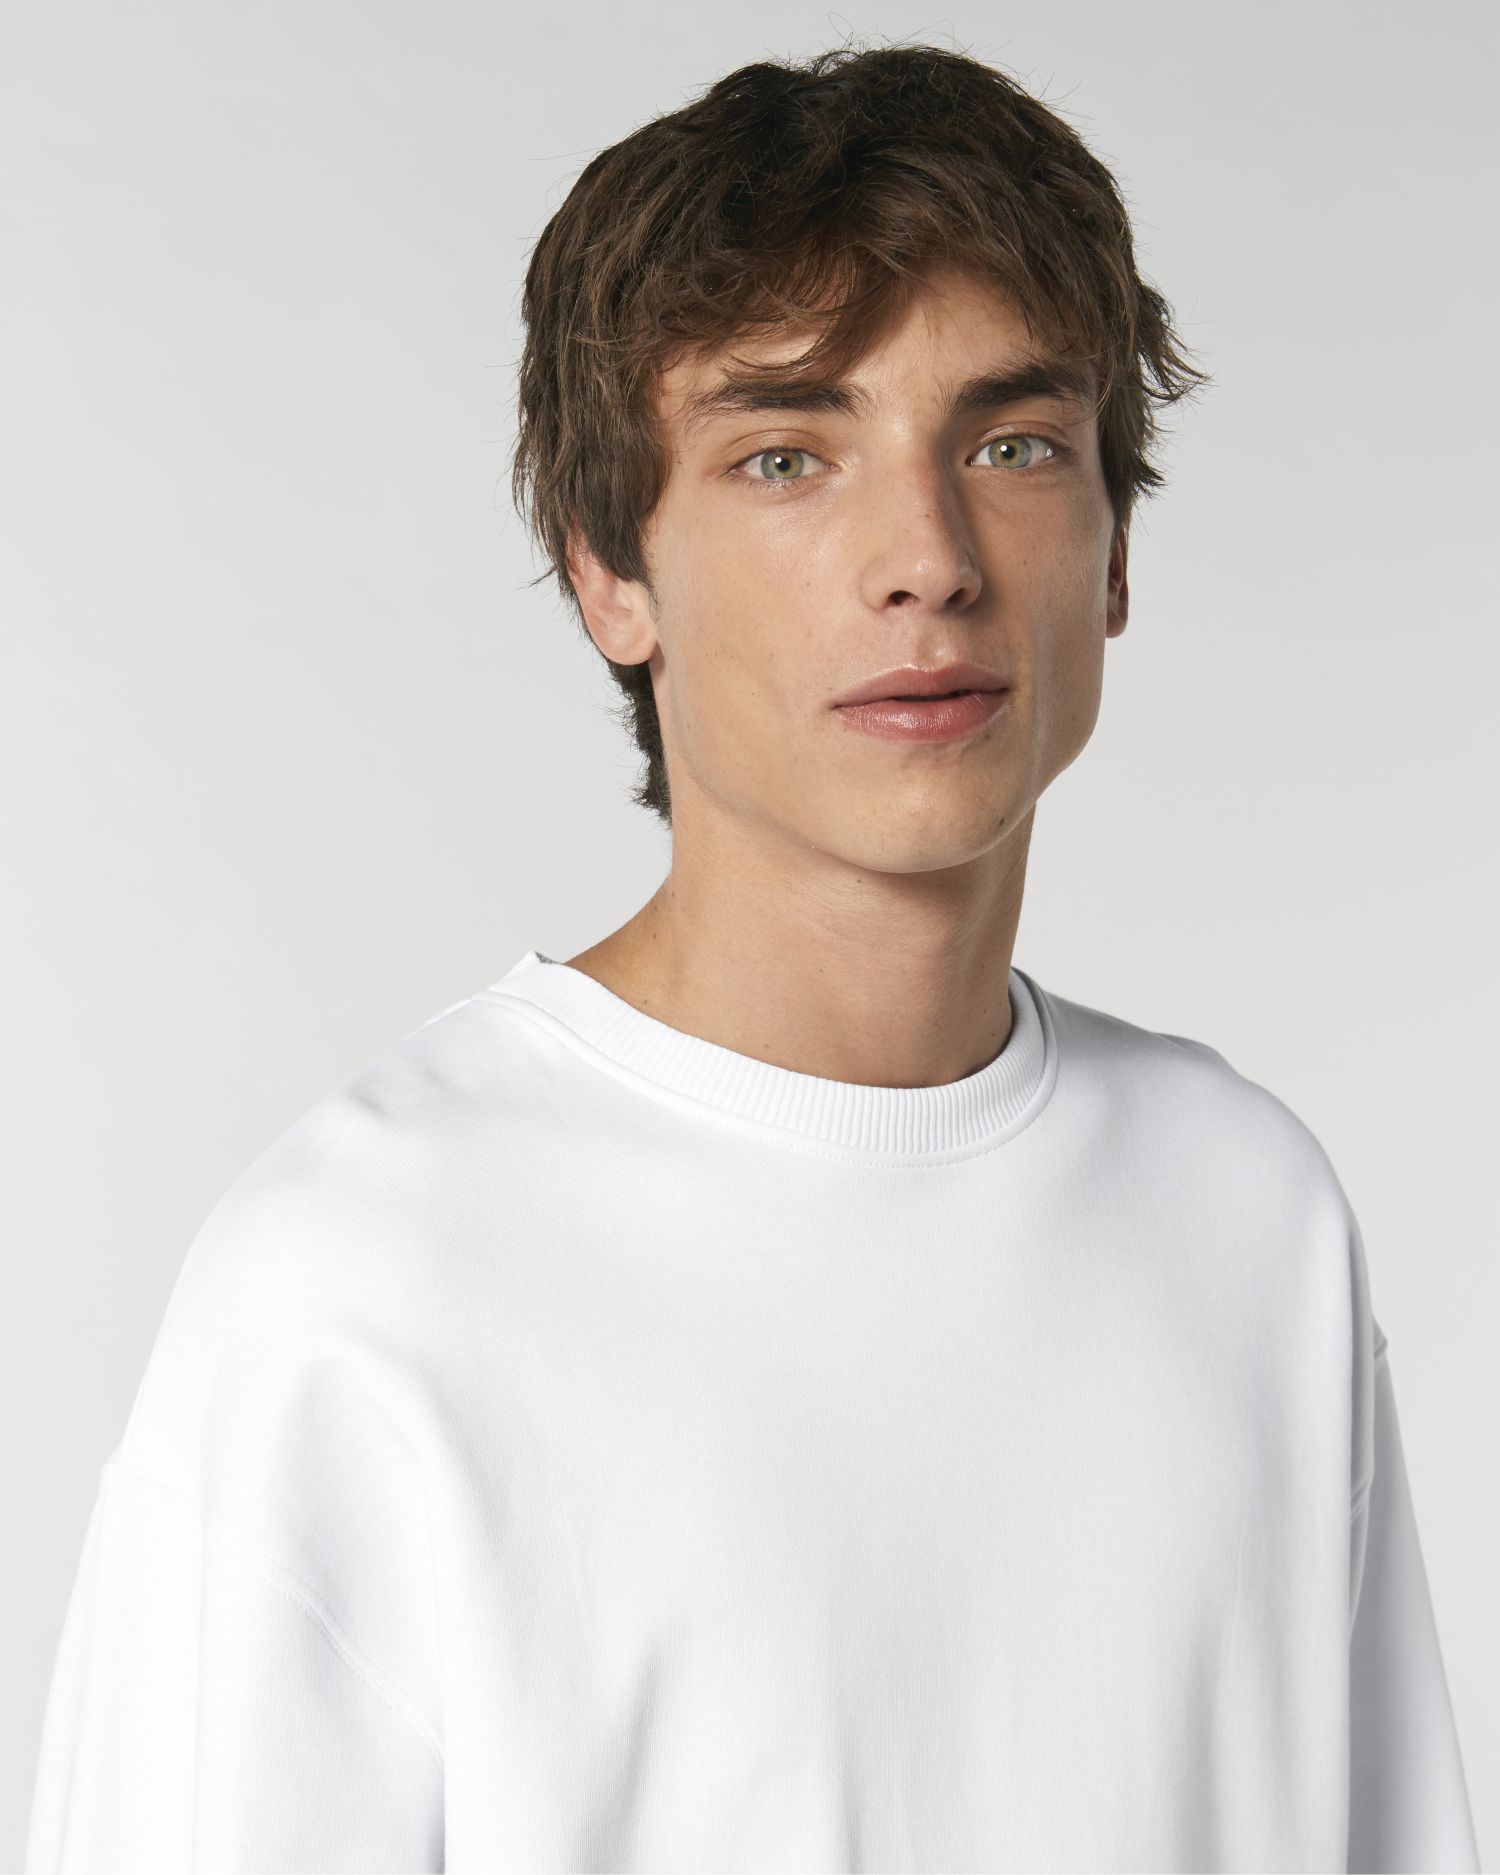 Crew neck sweatshirts Radder in Farbe White